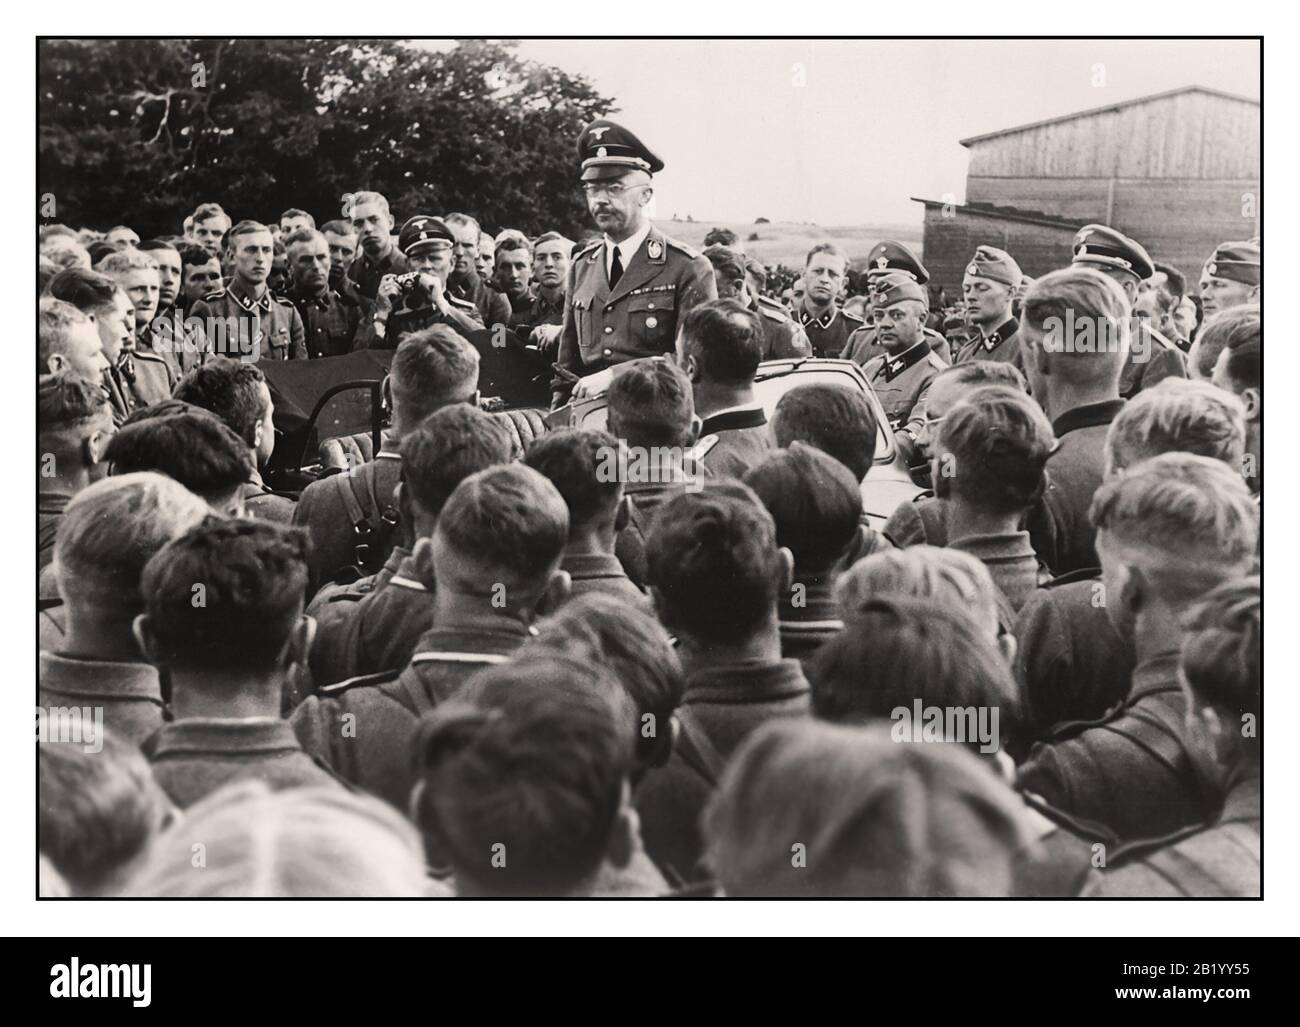 Retro Nazi-News Propagandabild des Reichführers-SS Heinrich Himmler, der sich an eine Gruppe von Soldaten in einem Kavallerien-Regiment der Waffen-SS in den Ostgebieten Polens wendet. Weltkrieg WW2 vierziger Jahre Stockfoto